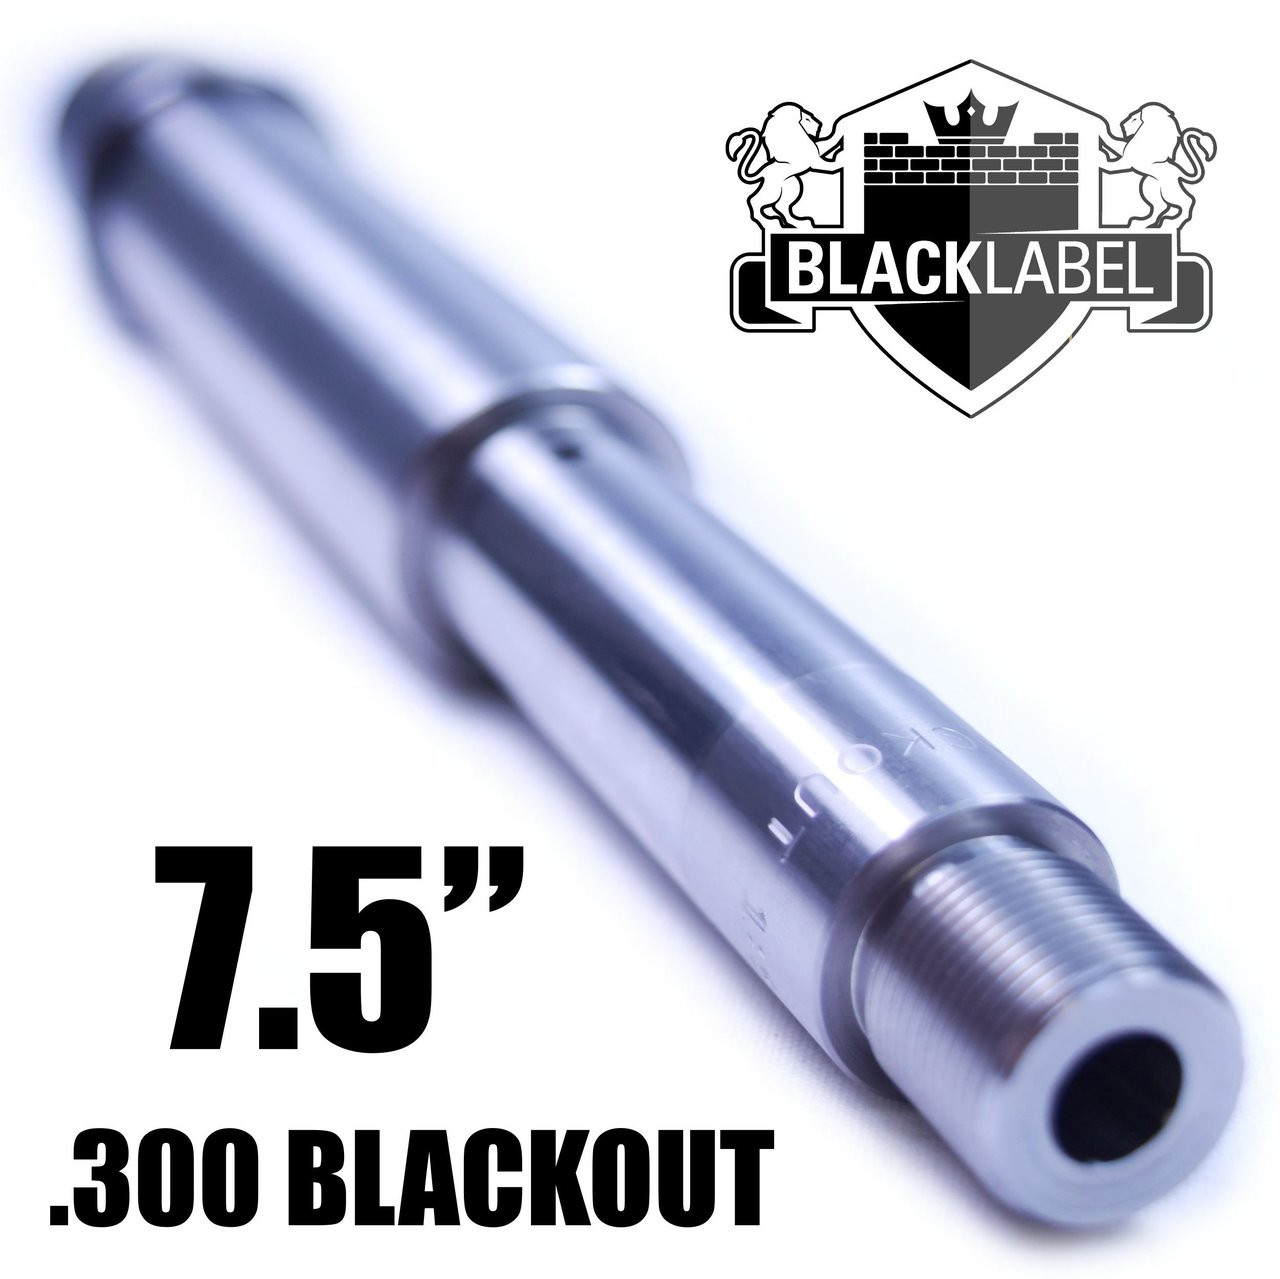 7.5" M4 Pistol/SBR Barrel 300 Blackout 1:8 Stainless Steel | 300AAC